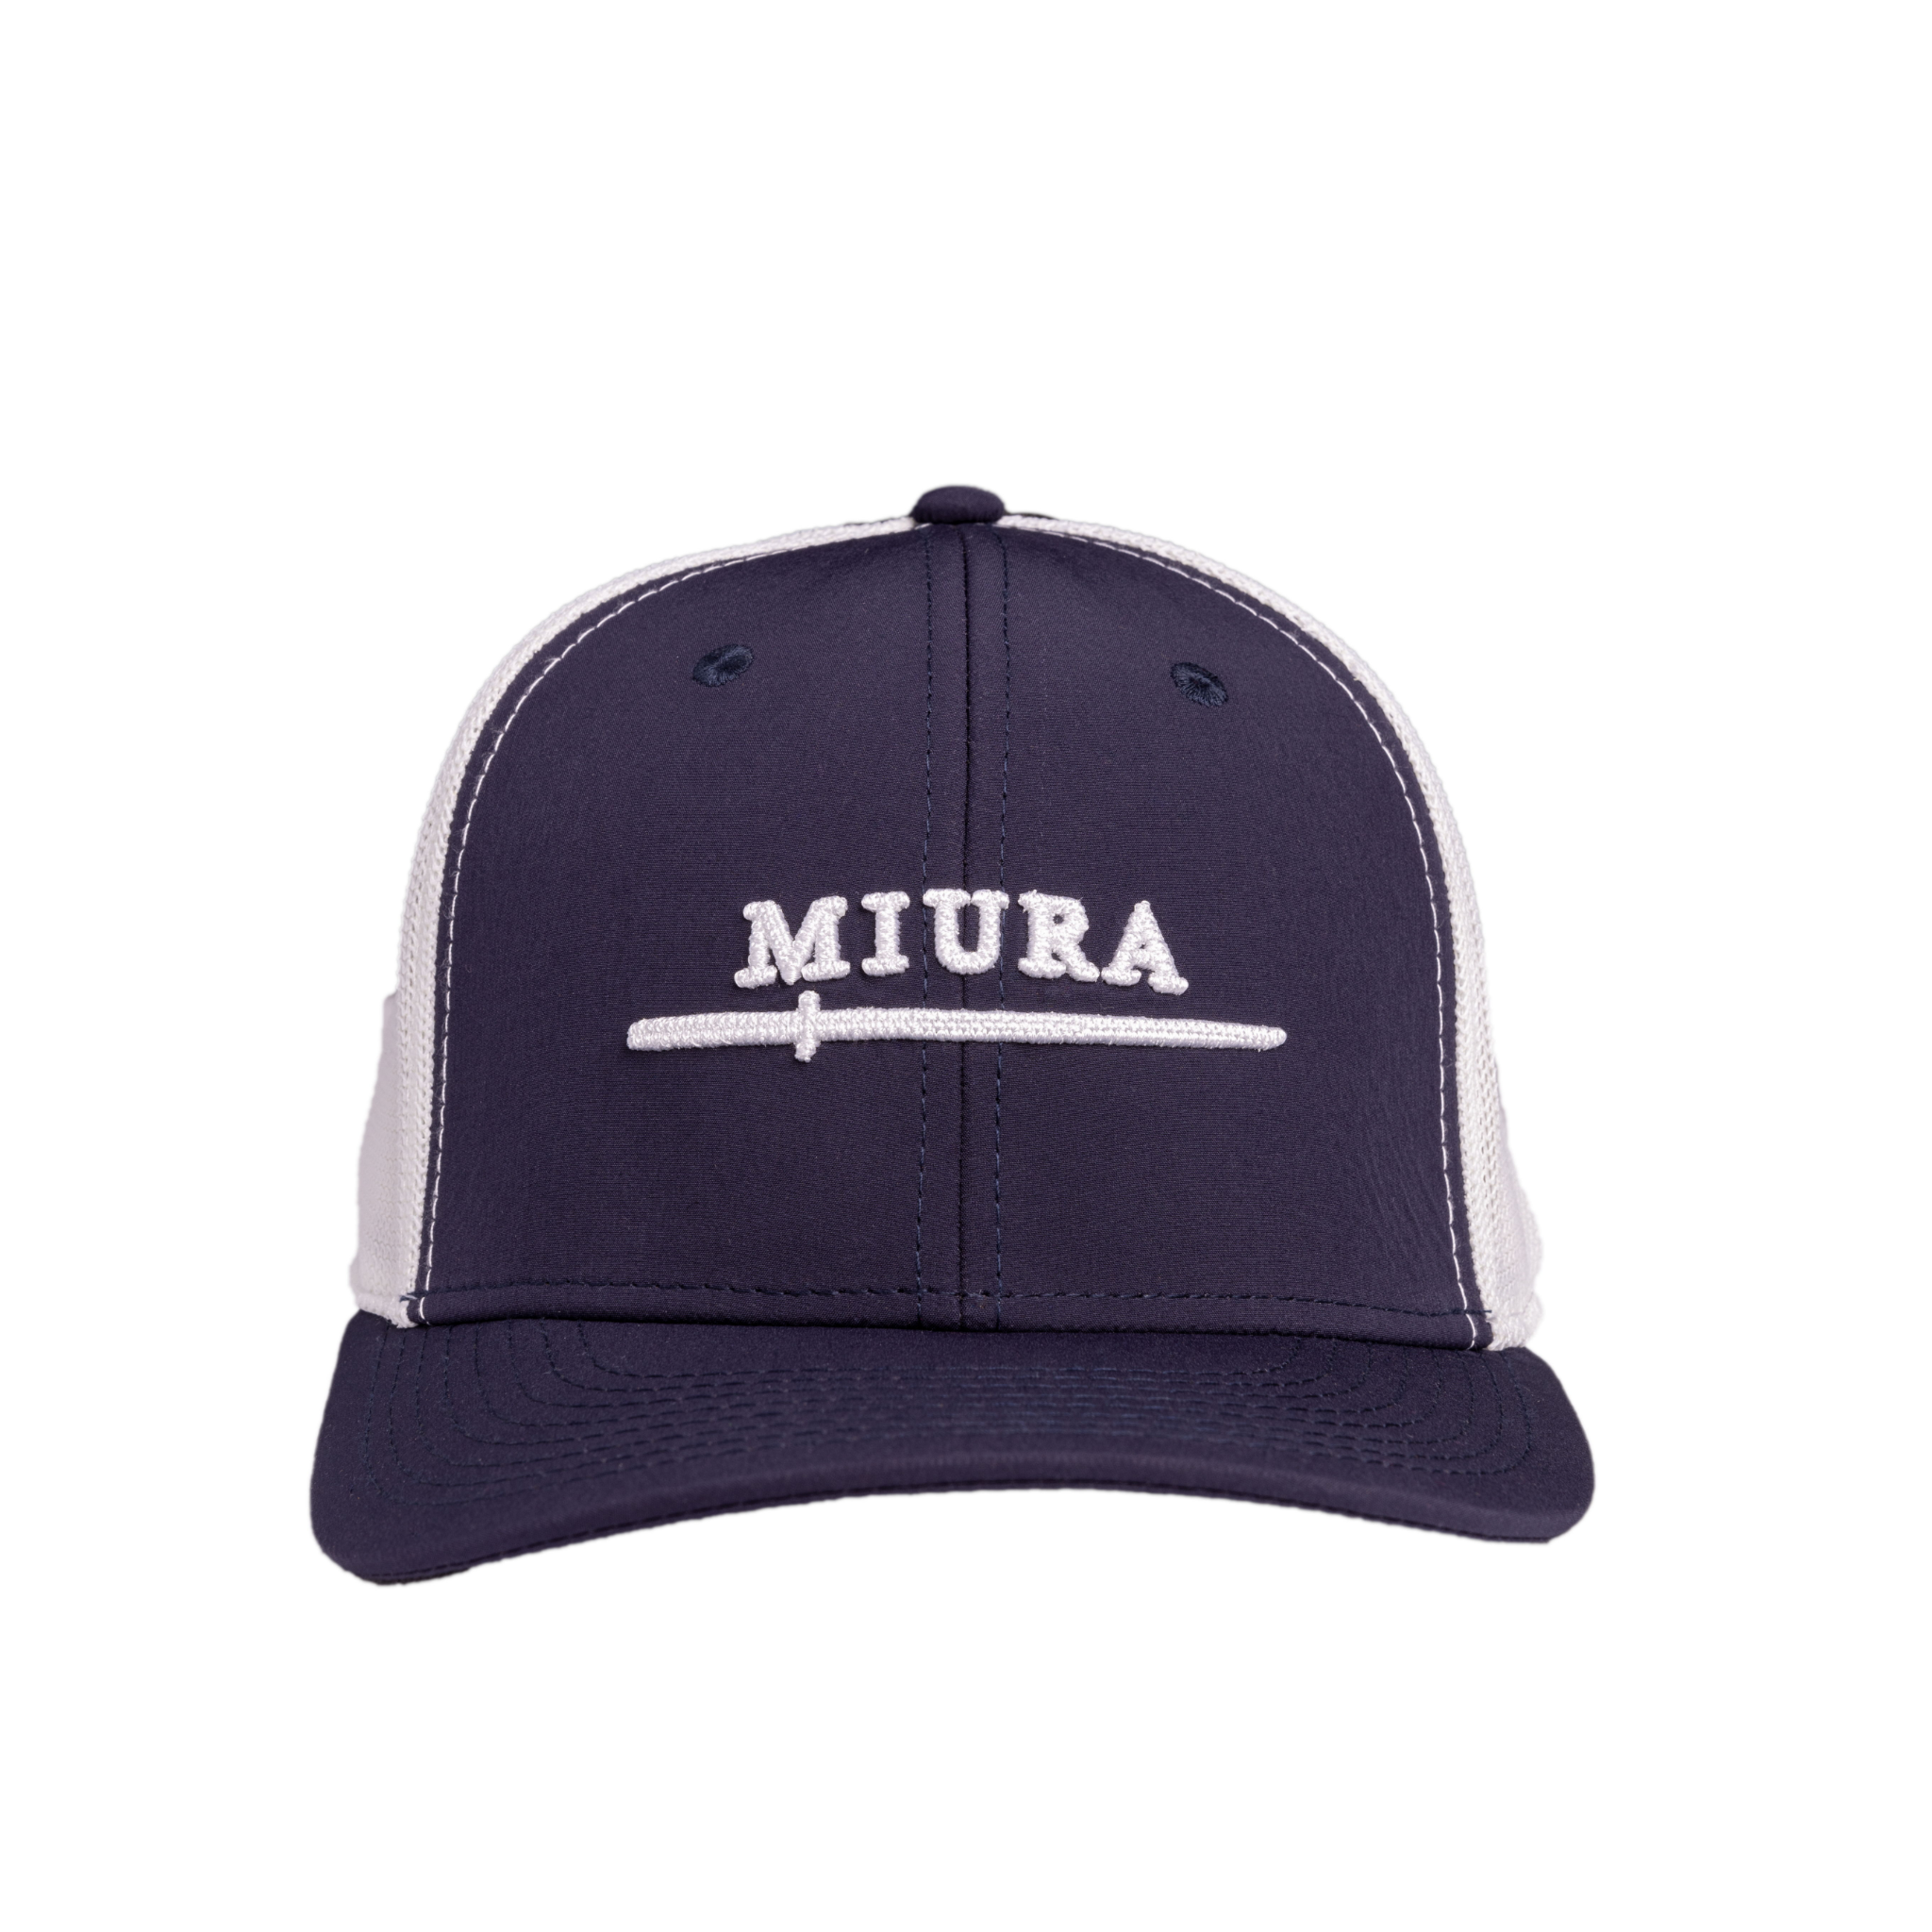 Miura Blade High Crown Trucker